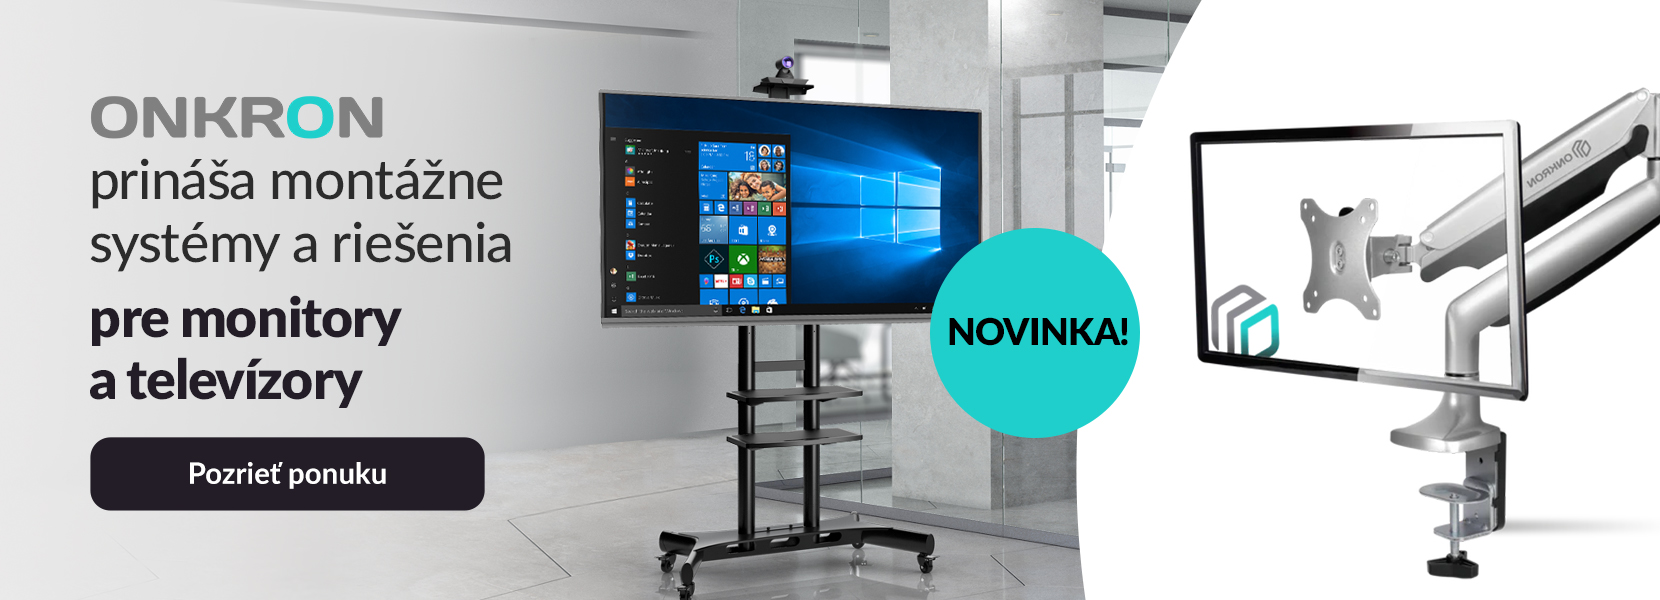 ONKRON prináša montážne systémy a riešenia pre monitory a TV